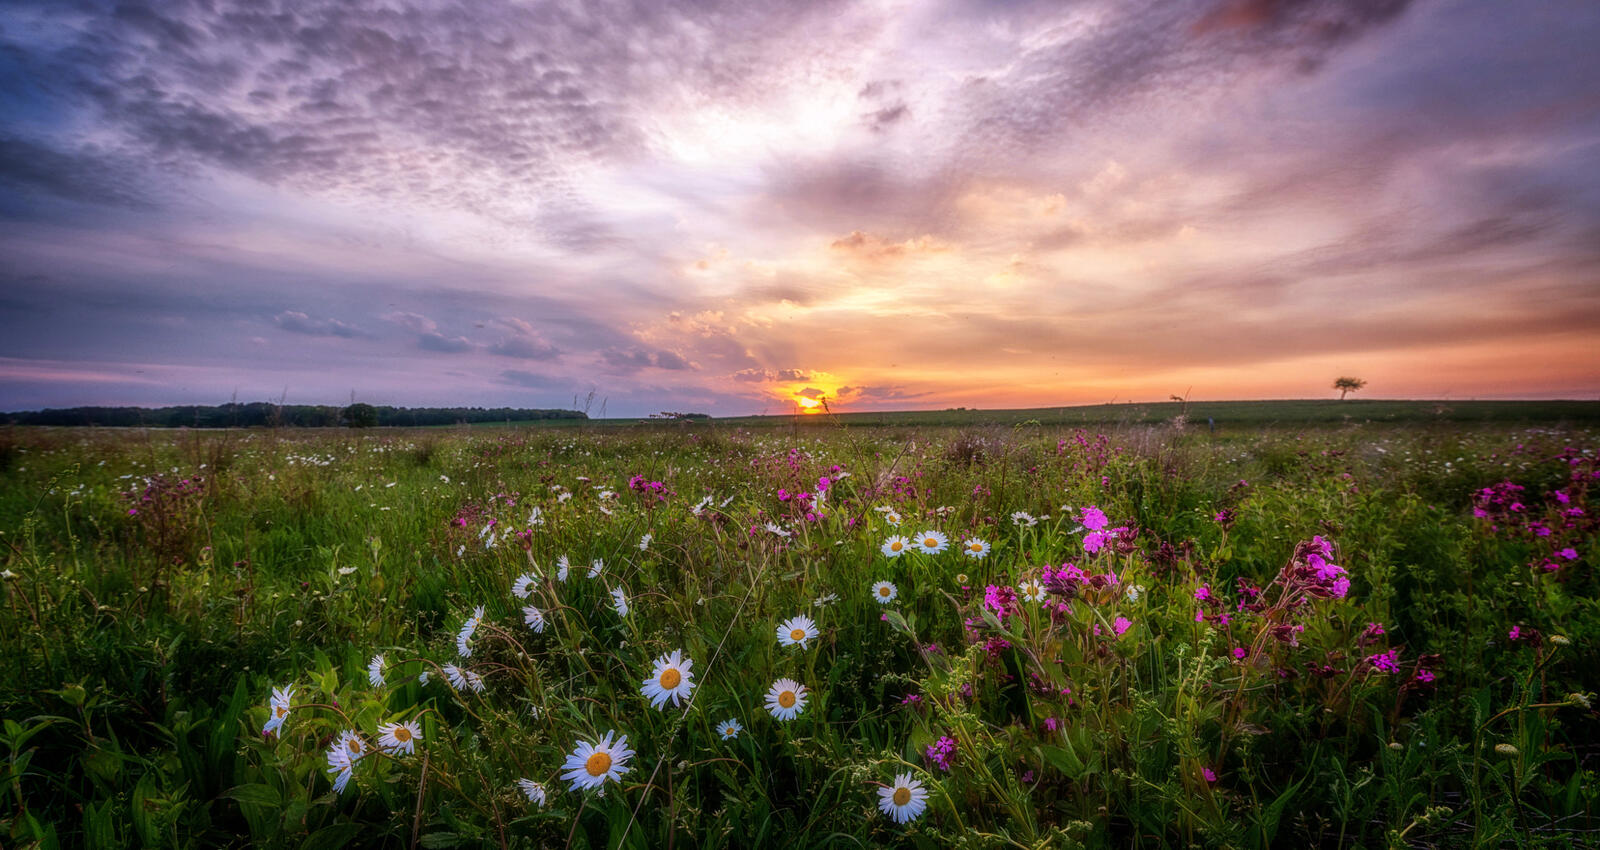 免费照片下载 sunset, daisies 图片